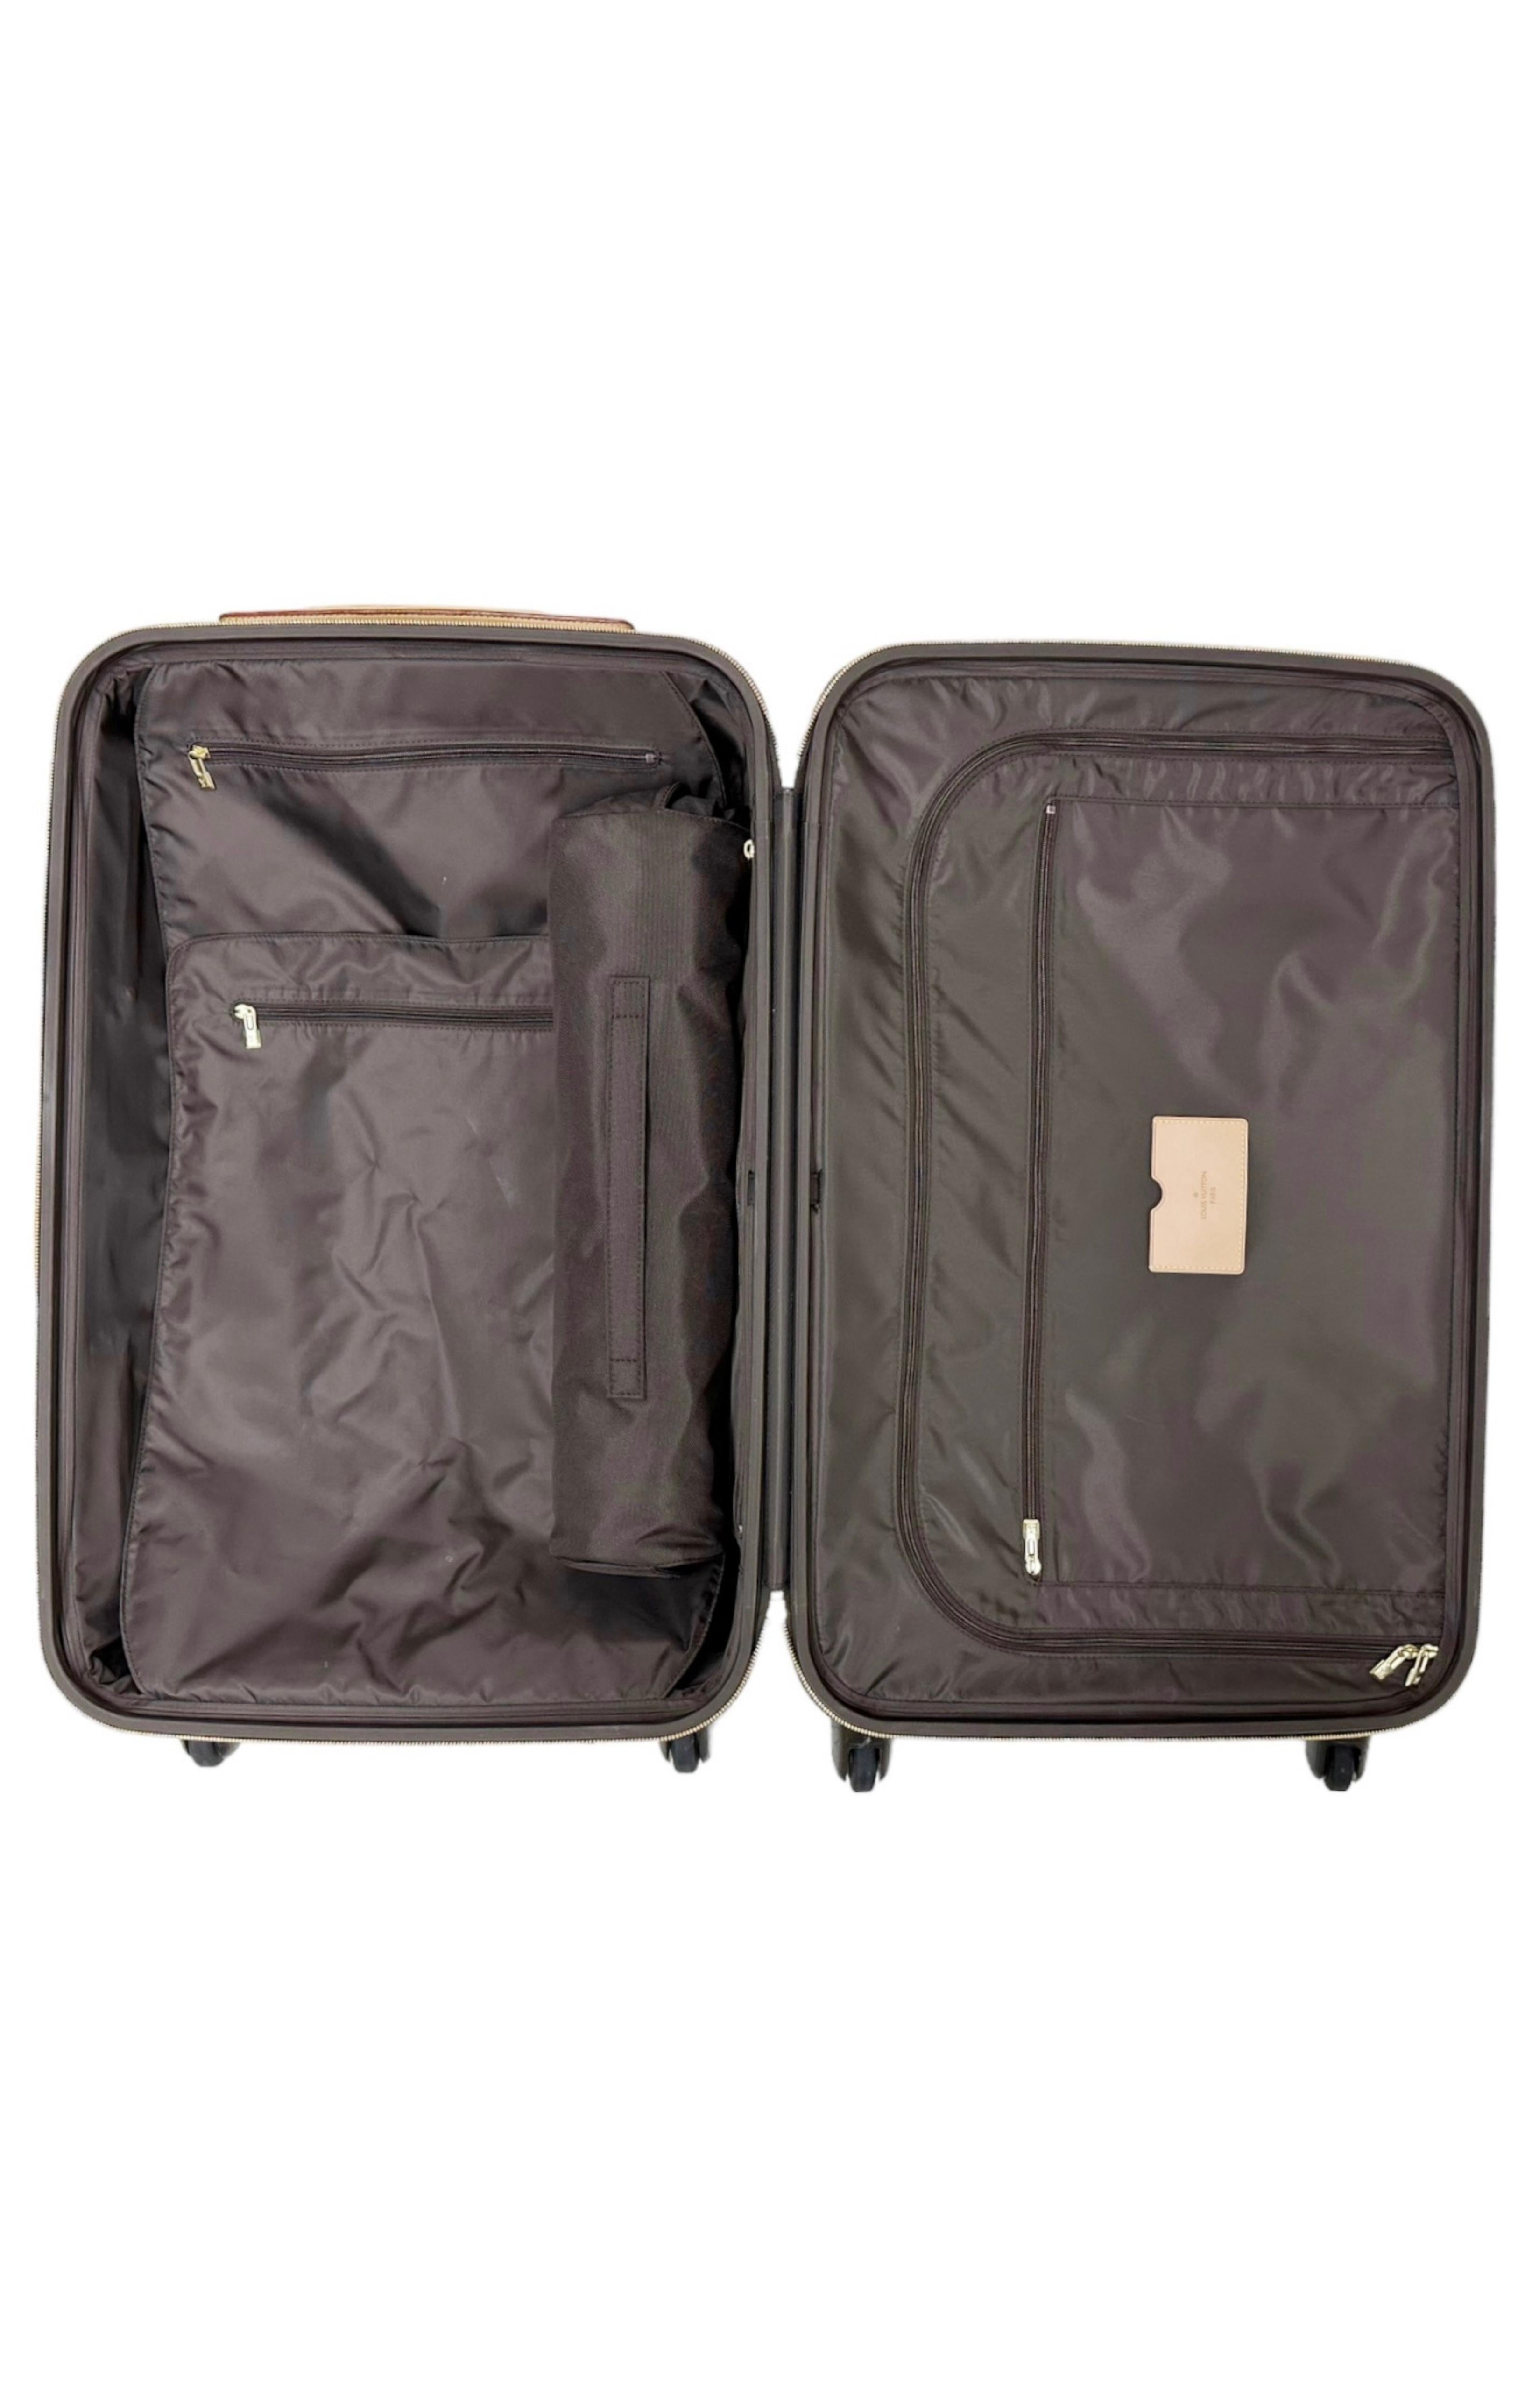 LOUIS VUITTON (RARE) Luggage & Travel Set Size: 17.25 x 10 x 29